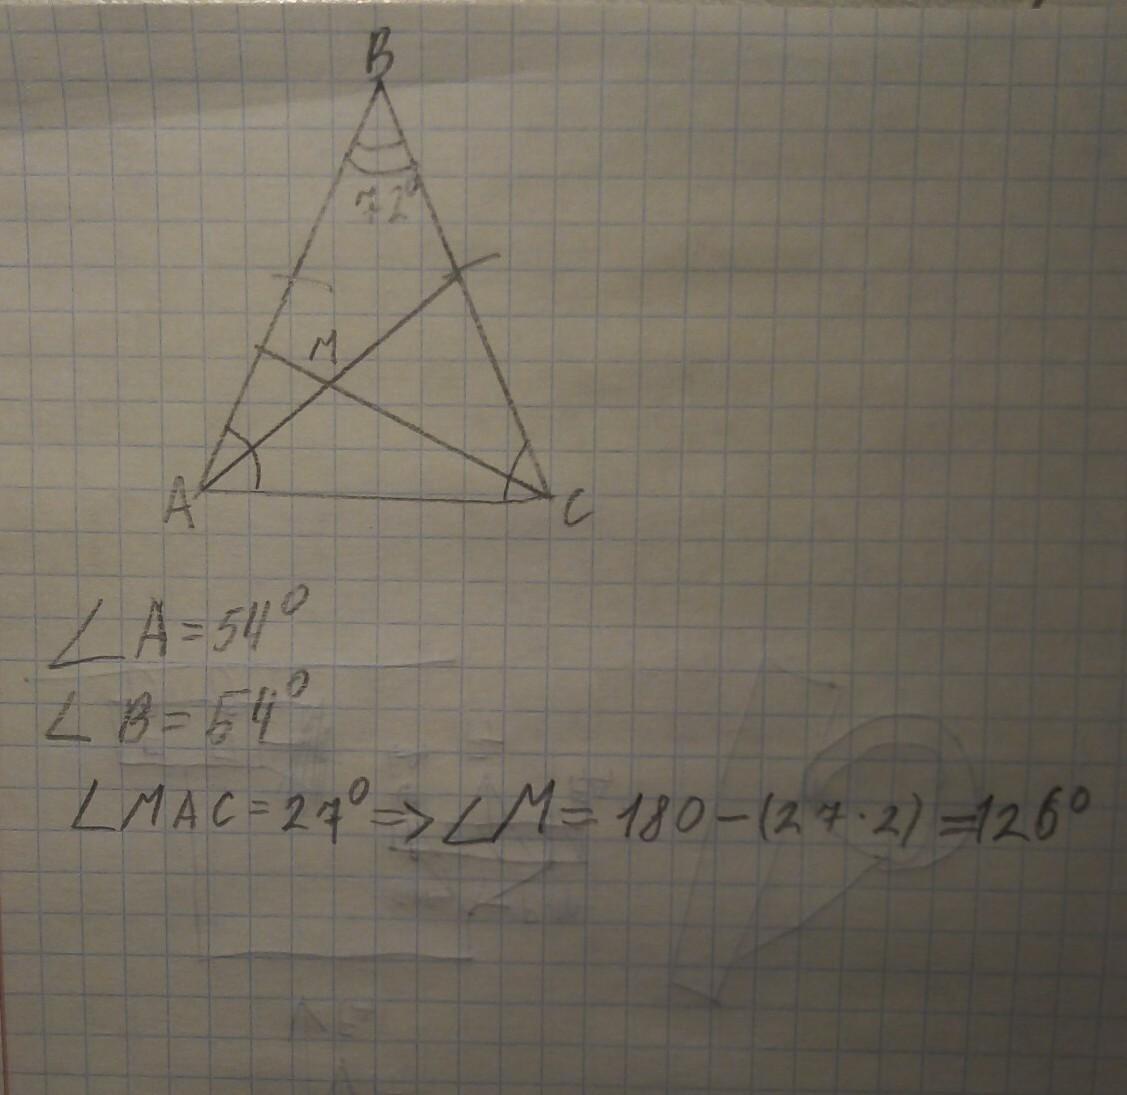 Треугольник абс аб равно бц угол. Треугольник АБС. Биссектриса. В треугольнике АВС угол стороны АВ И вс равны. В равнобедренном треугольнике пересекаются биссектрисы углов.